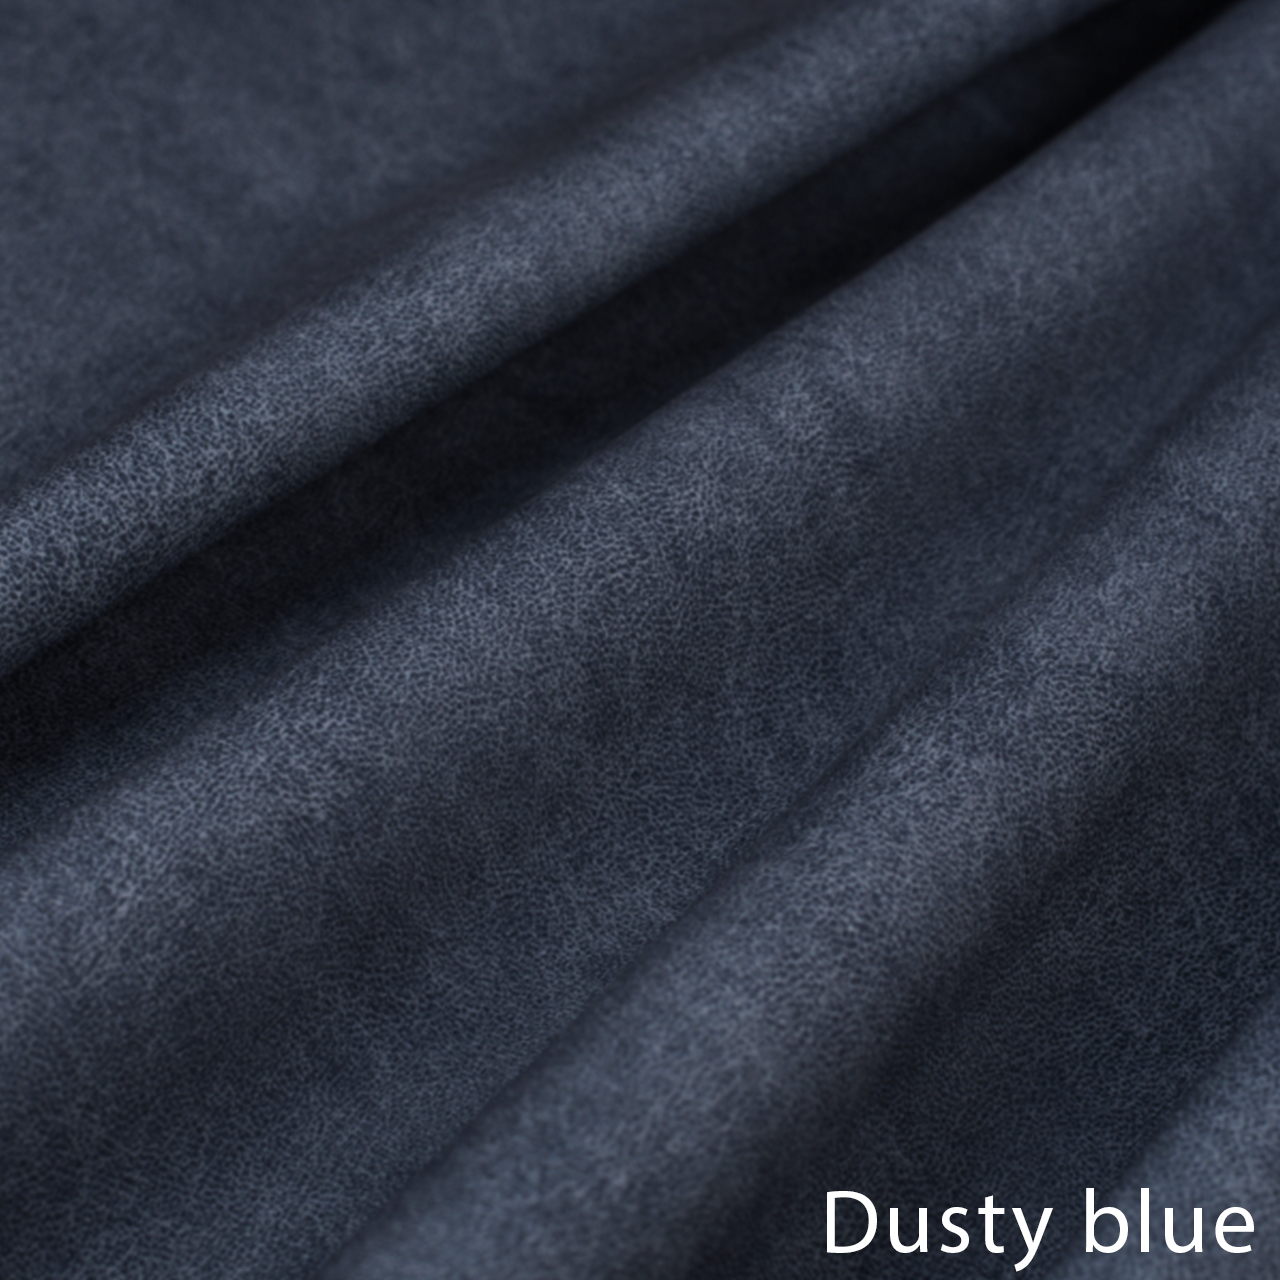 Dusty blue